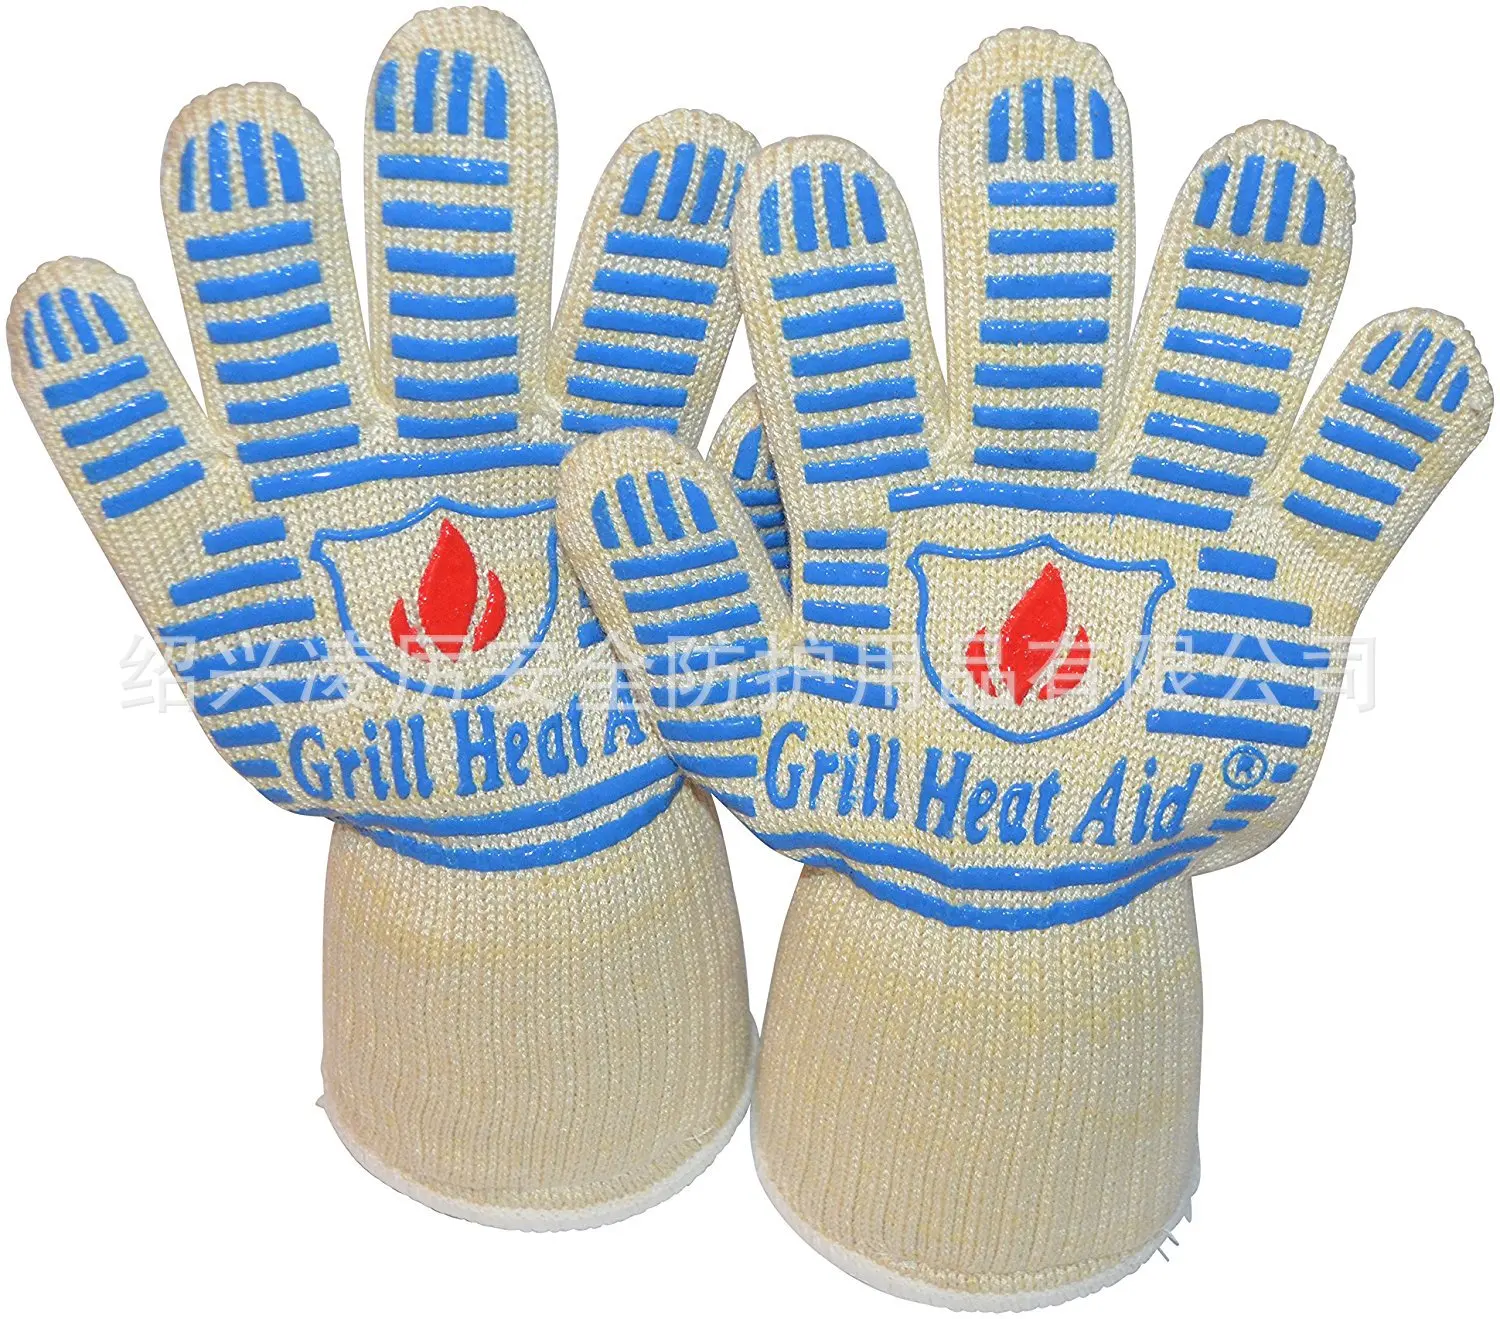 Производители, новый стиль, термостойкие перчатки, противоскользящие, износостойкие, огнестойкие, перчатки для барбекю, печи, 35 см, черные и